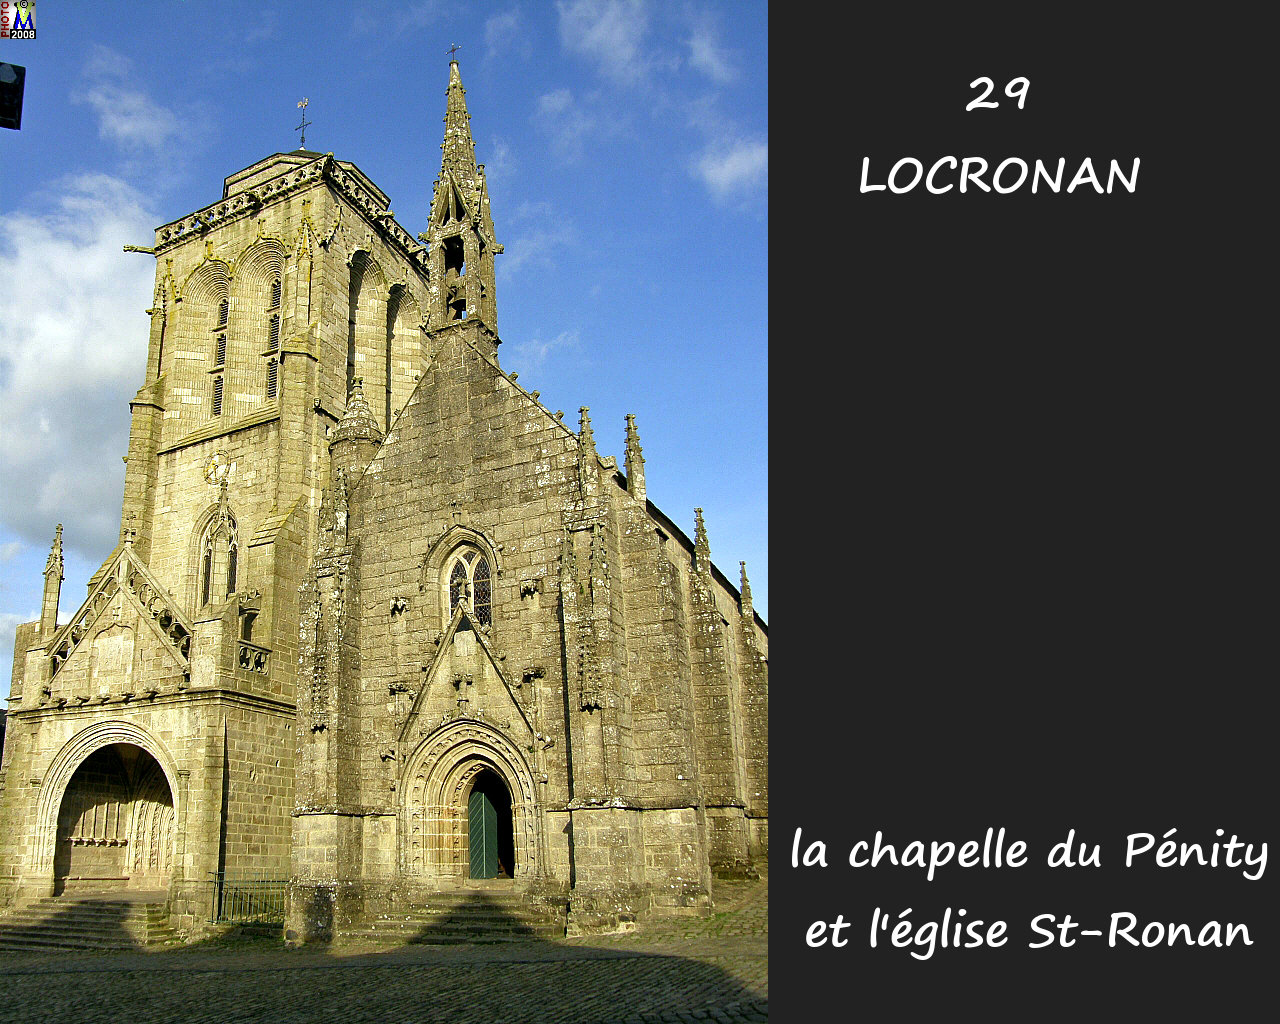 29LOCRONAN_chapelle_102.jpg